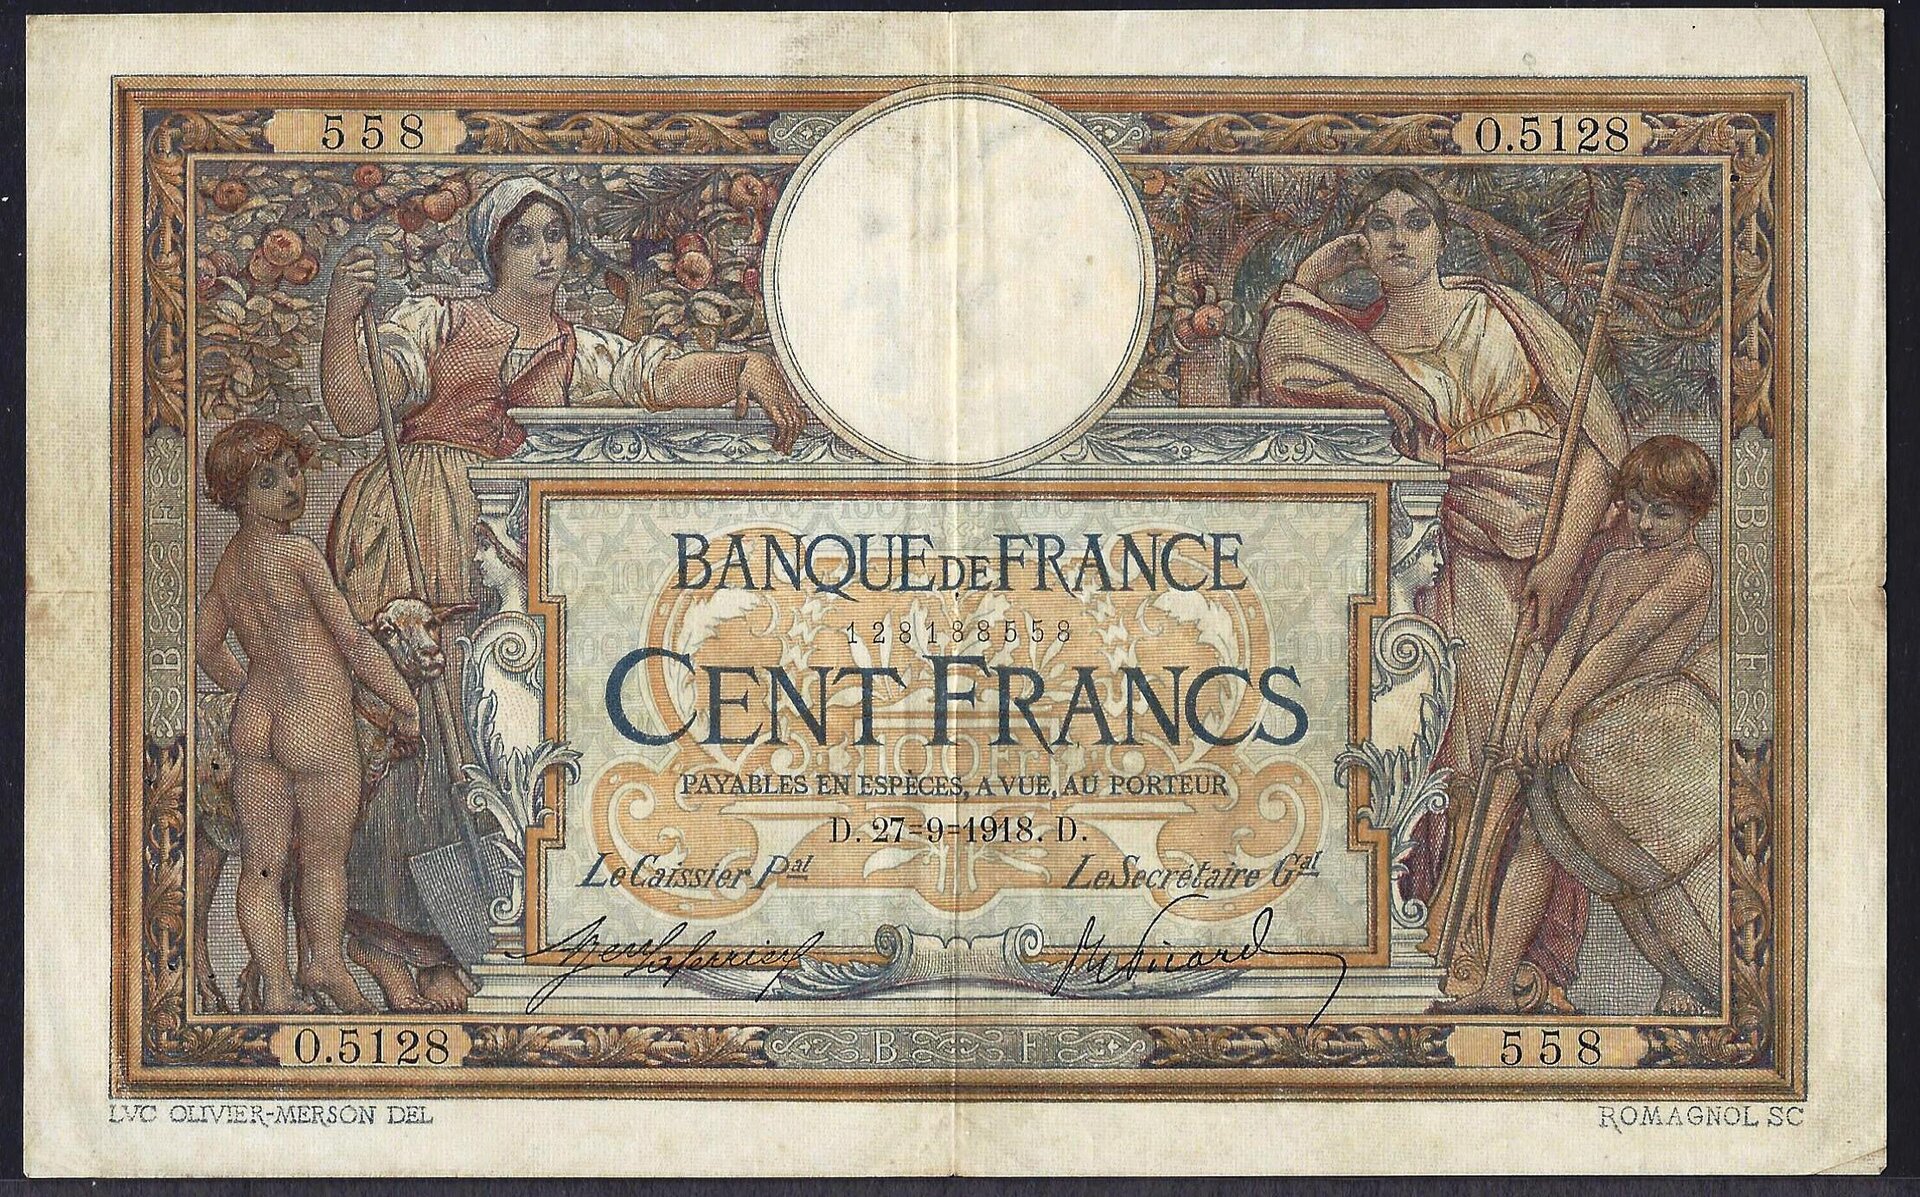 France_27-9-1918_100Francs_face.jpg